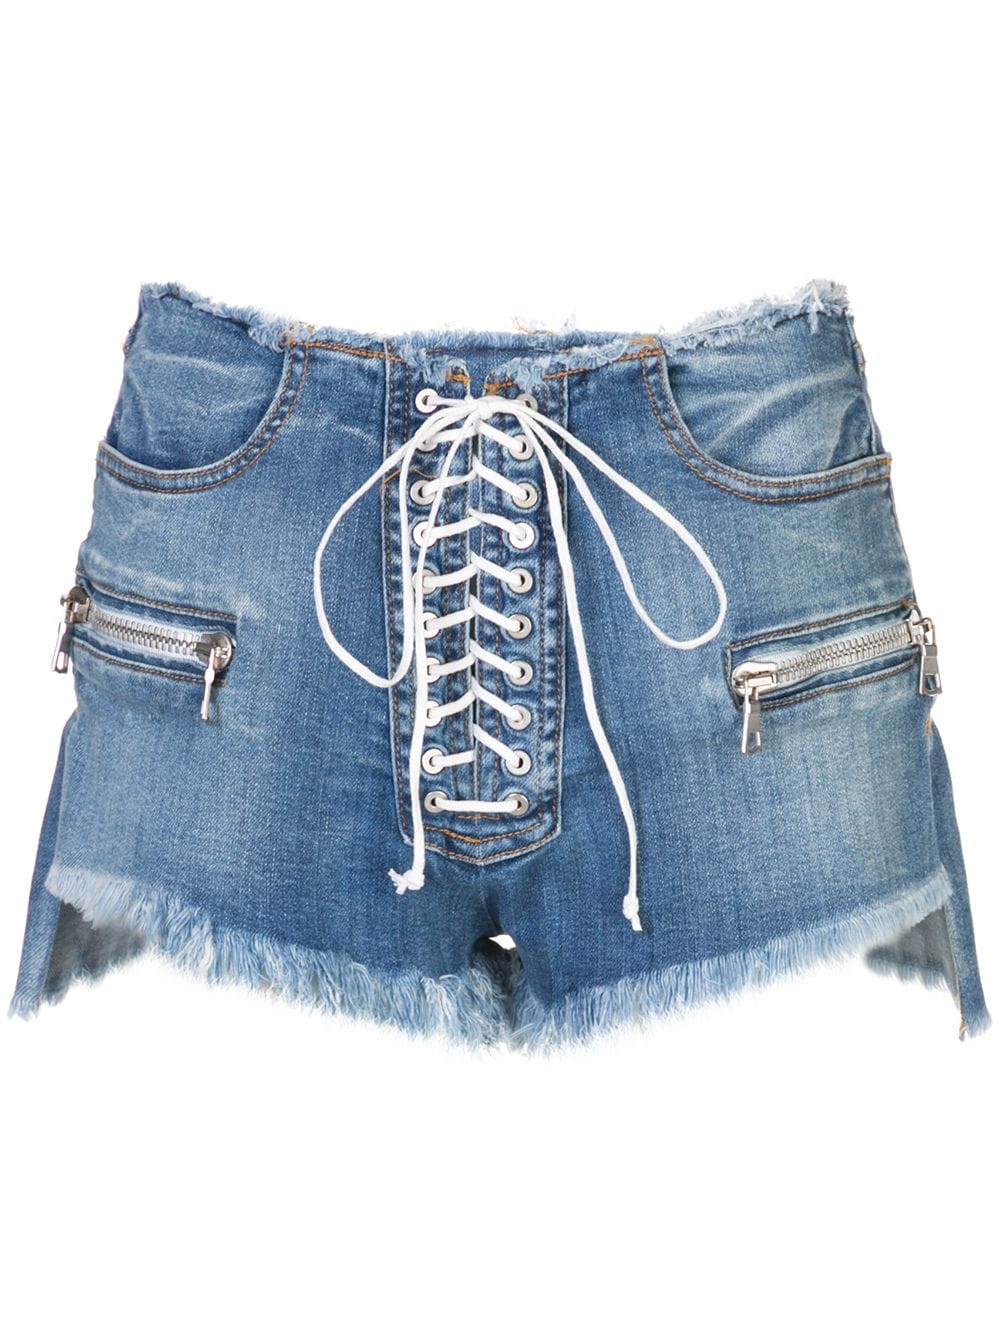 фото Unravel project джинсовая юбка с прорванными деталями